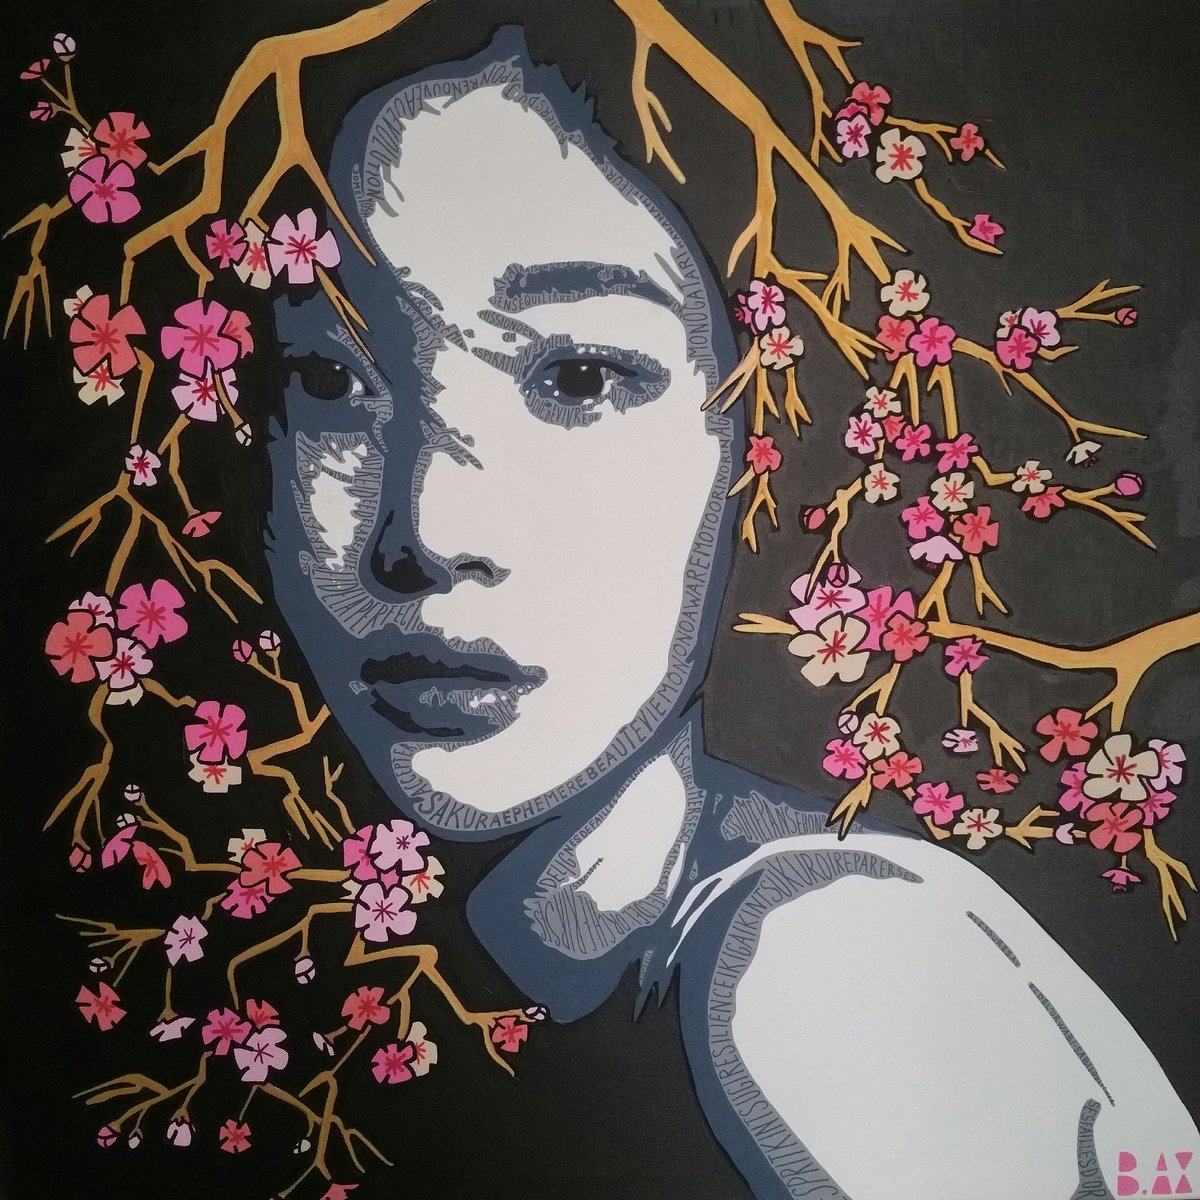 'Sakura & kintsugi' 
Technique mixte sur toile
80 X 80 cm
#artcollectorsworld #artcollector #artcollectors #japanart #womeninart #womenart #womanart #StreetArt